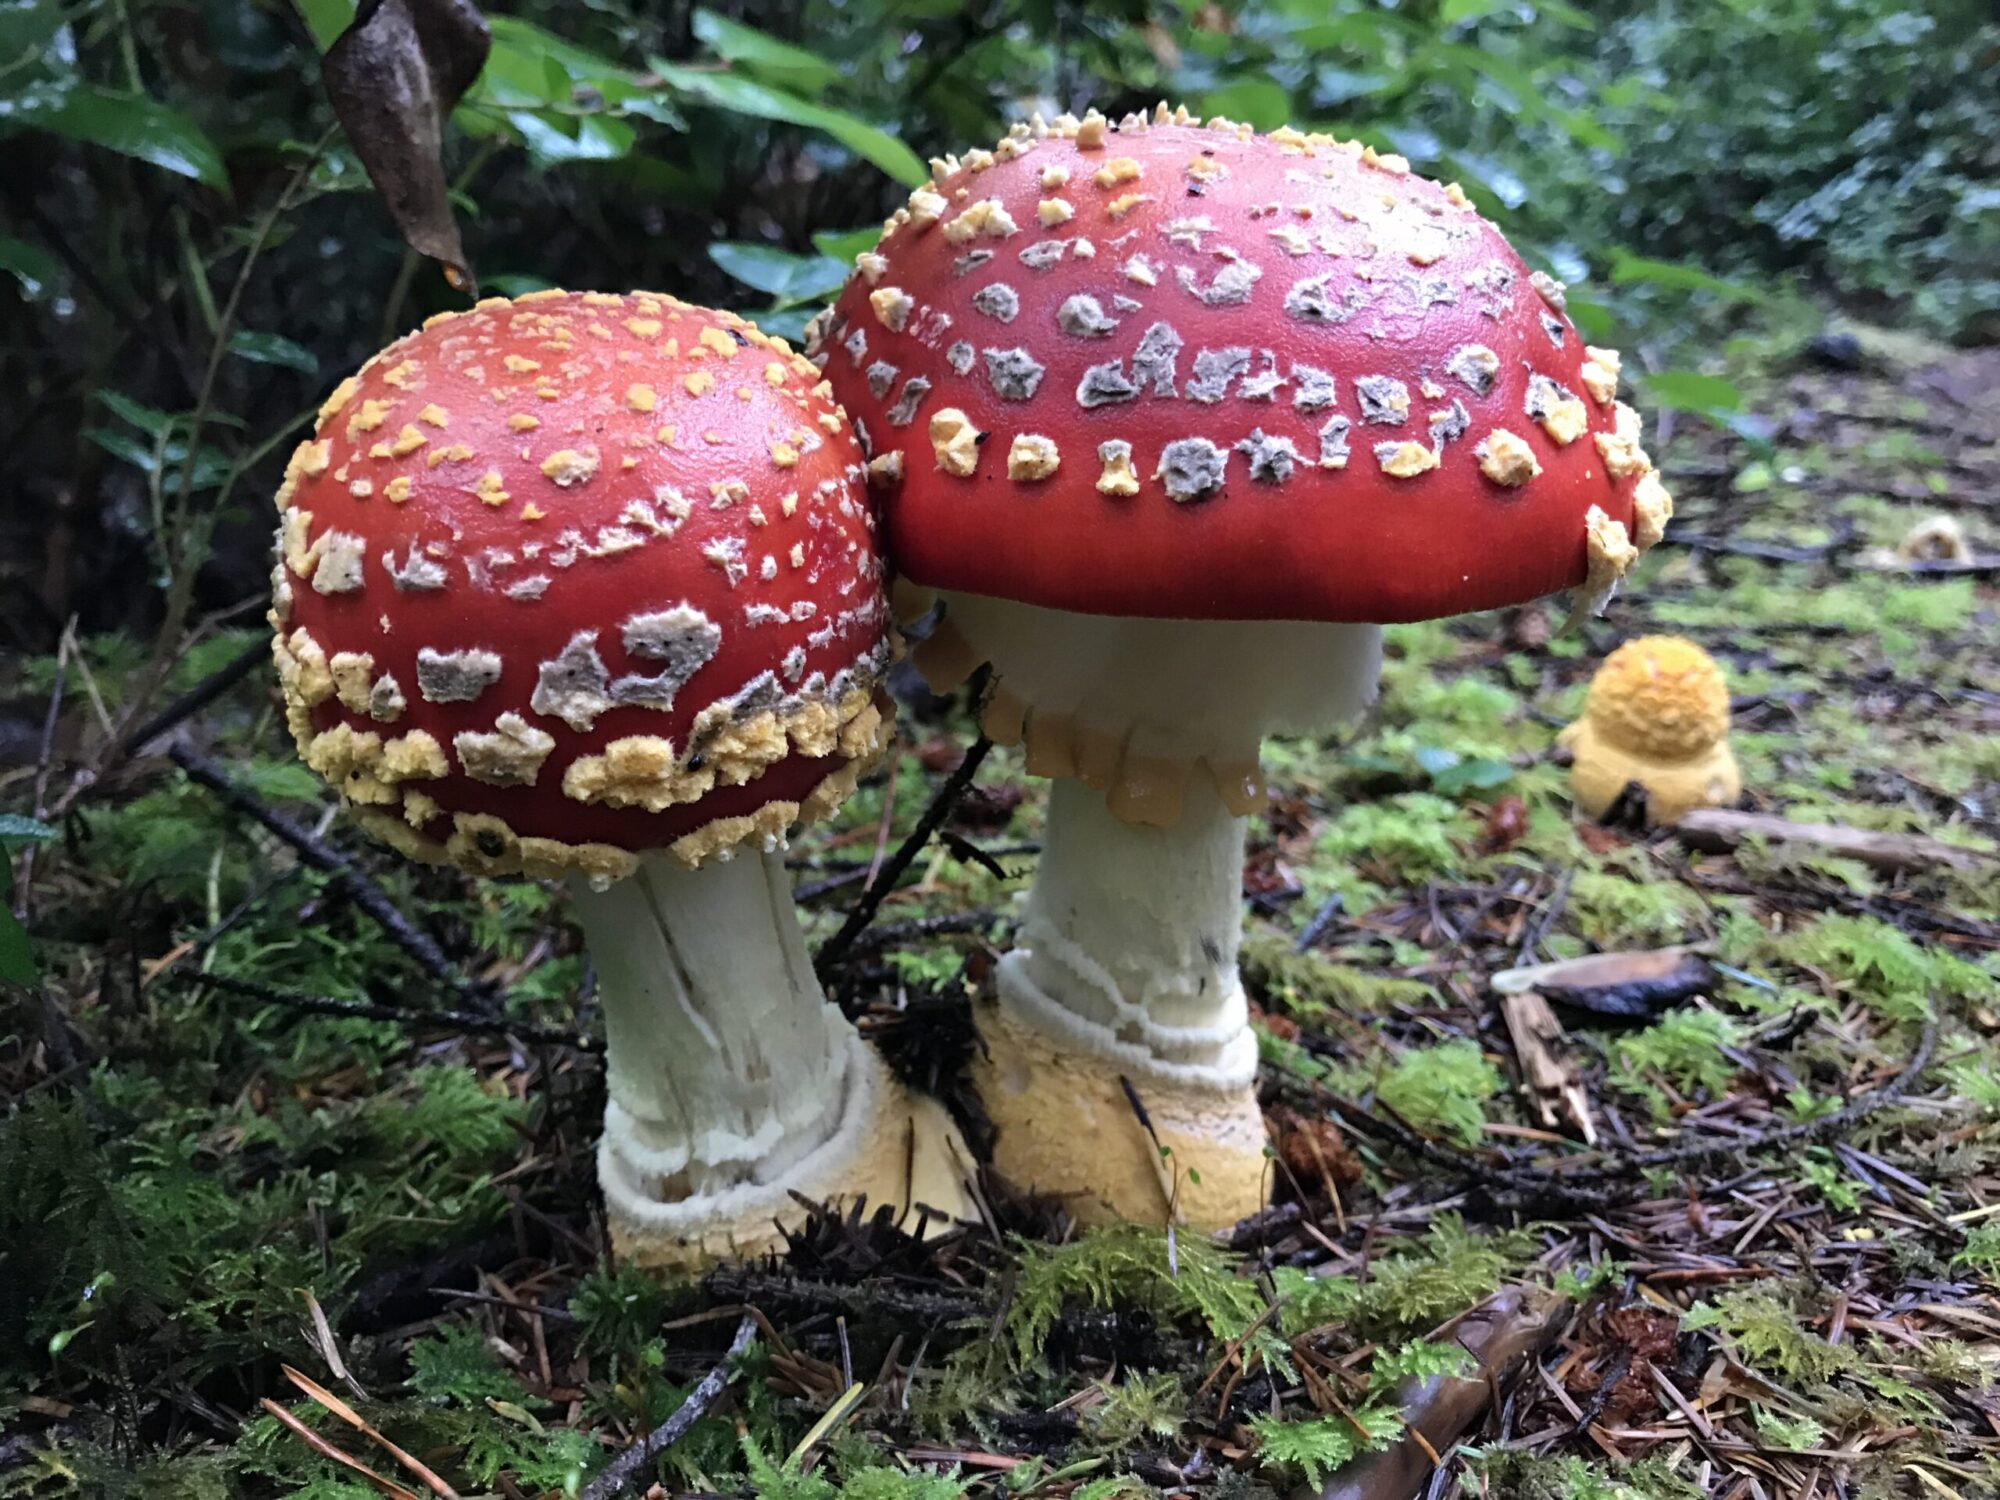 Amanita muscaria poisonous mushroom